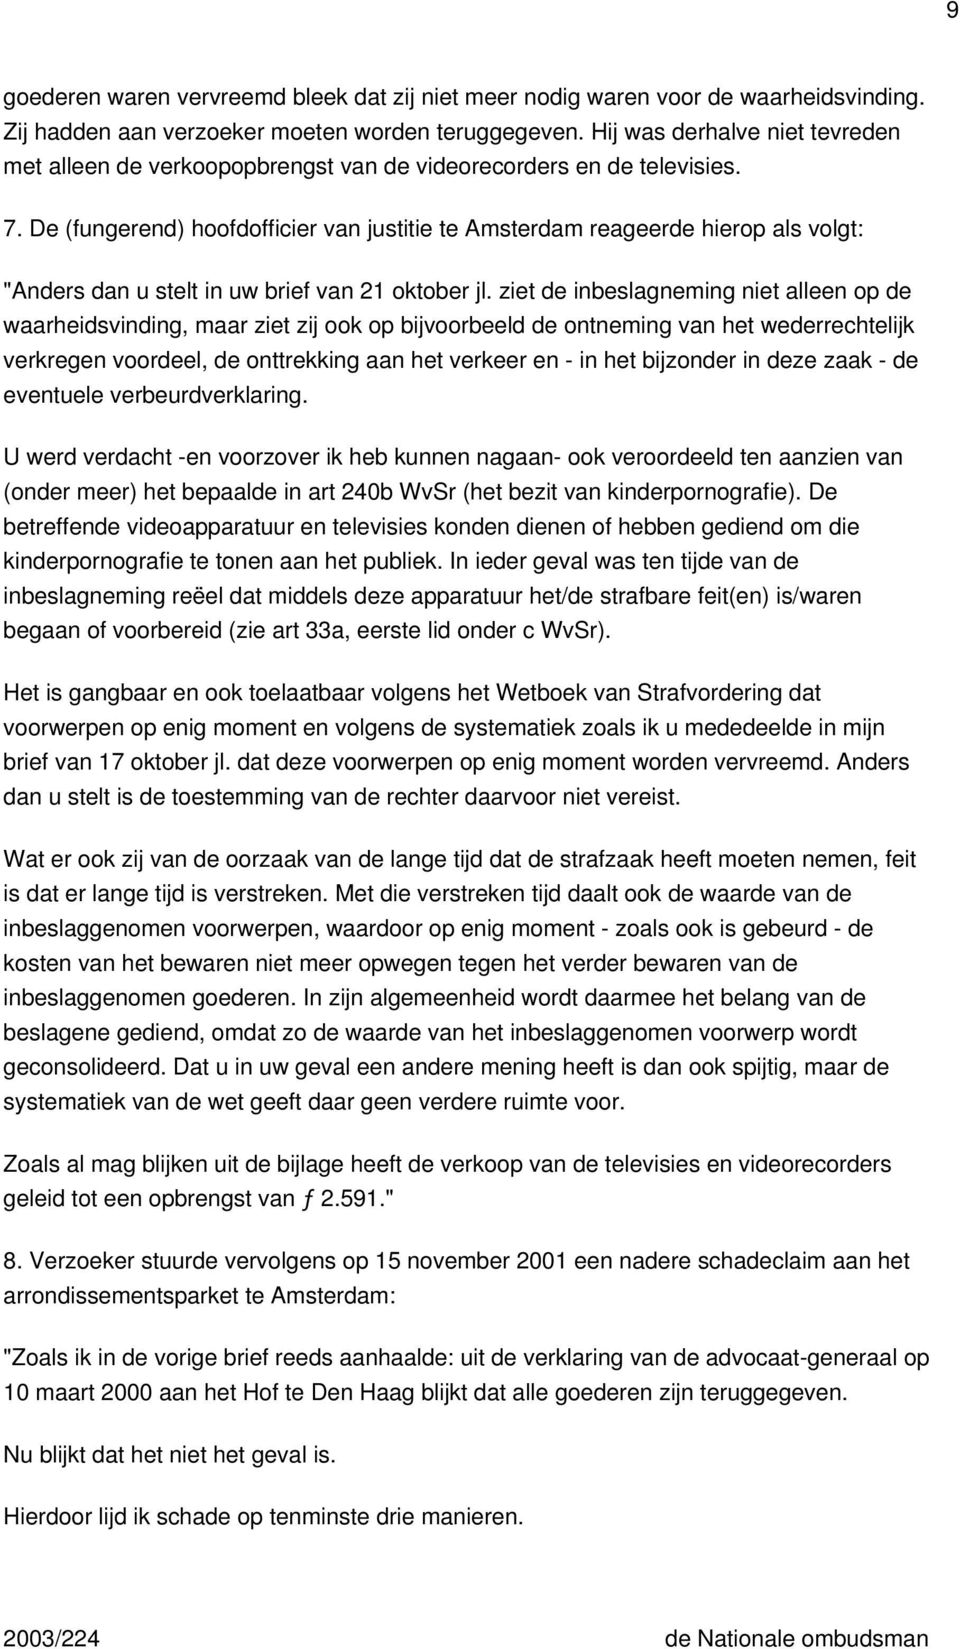 De (fungerend) hoofdofficier van justitie te Amsterdam reageerde hierop als volgt: "Anders dan u stelt in uw brief van 21 oktober jl.